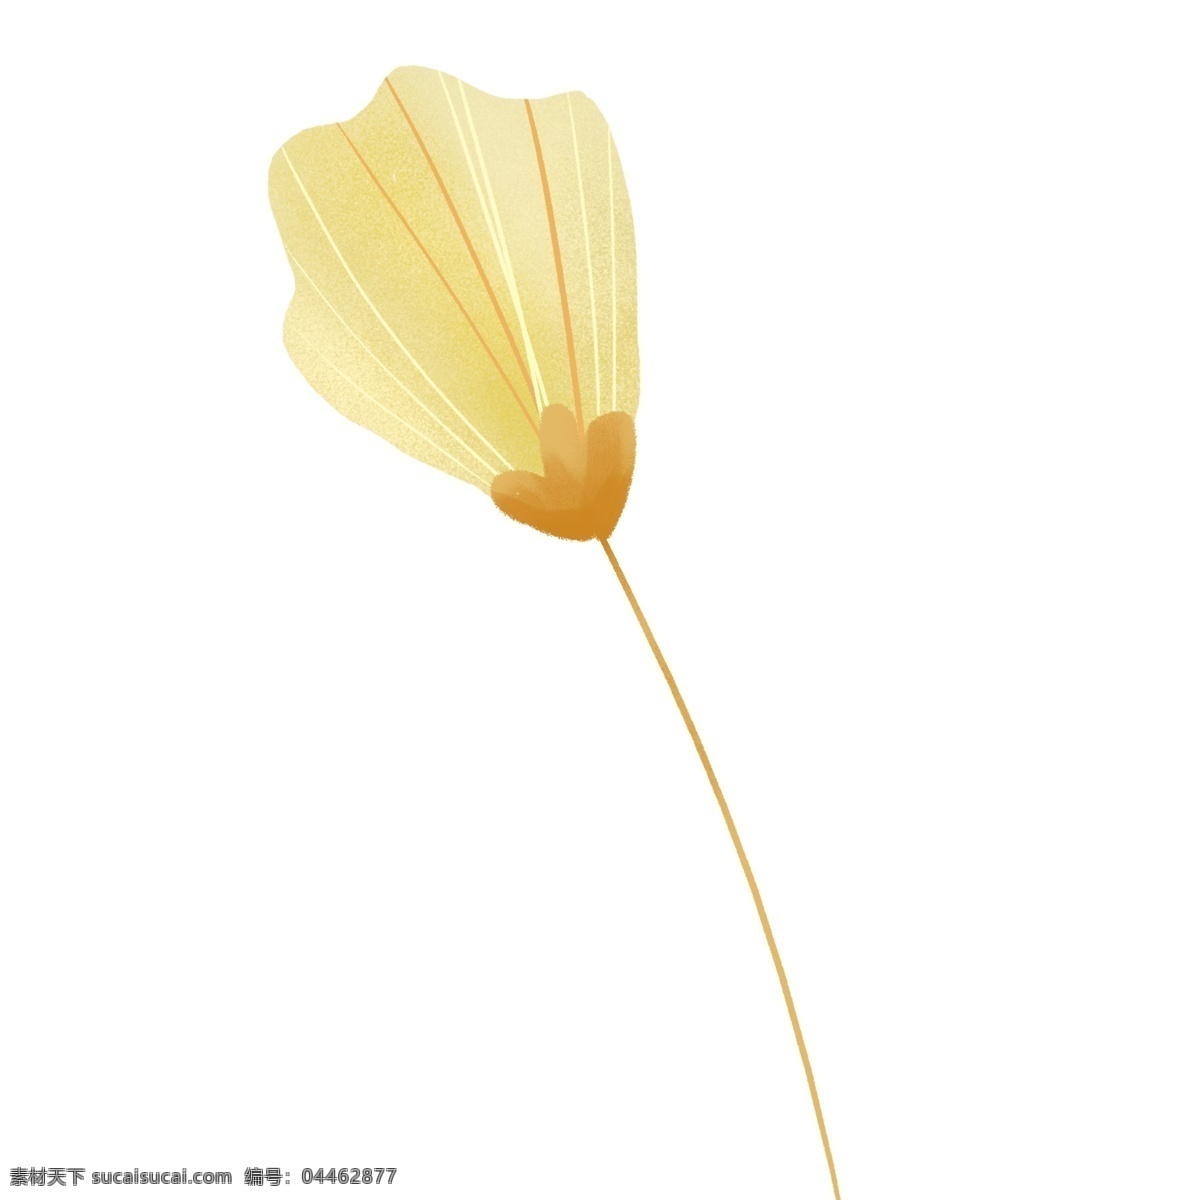 黄色 简约 植物 花朵 绘画 插画元素 设计元素 卡通 彩色 小清新 精致